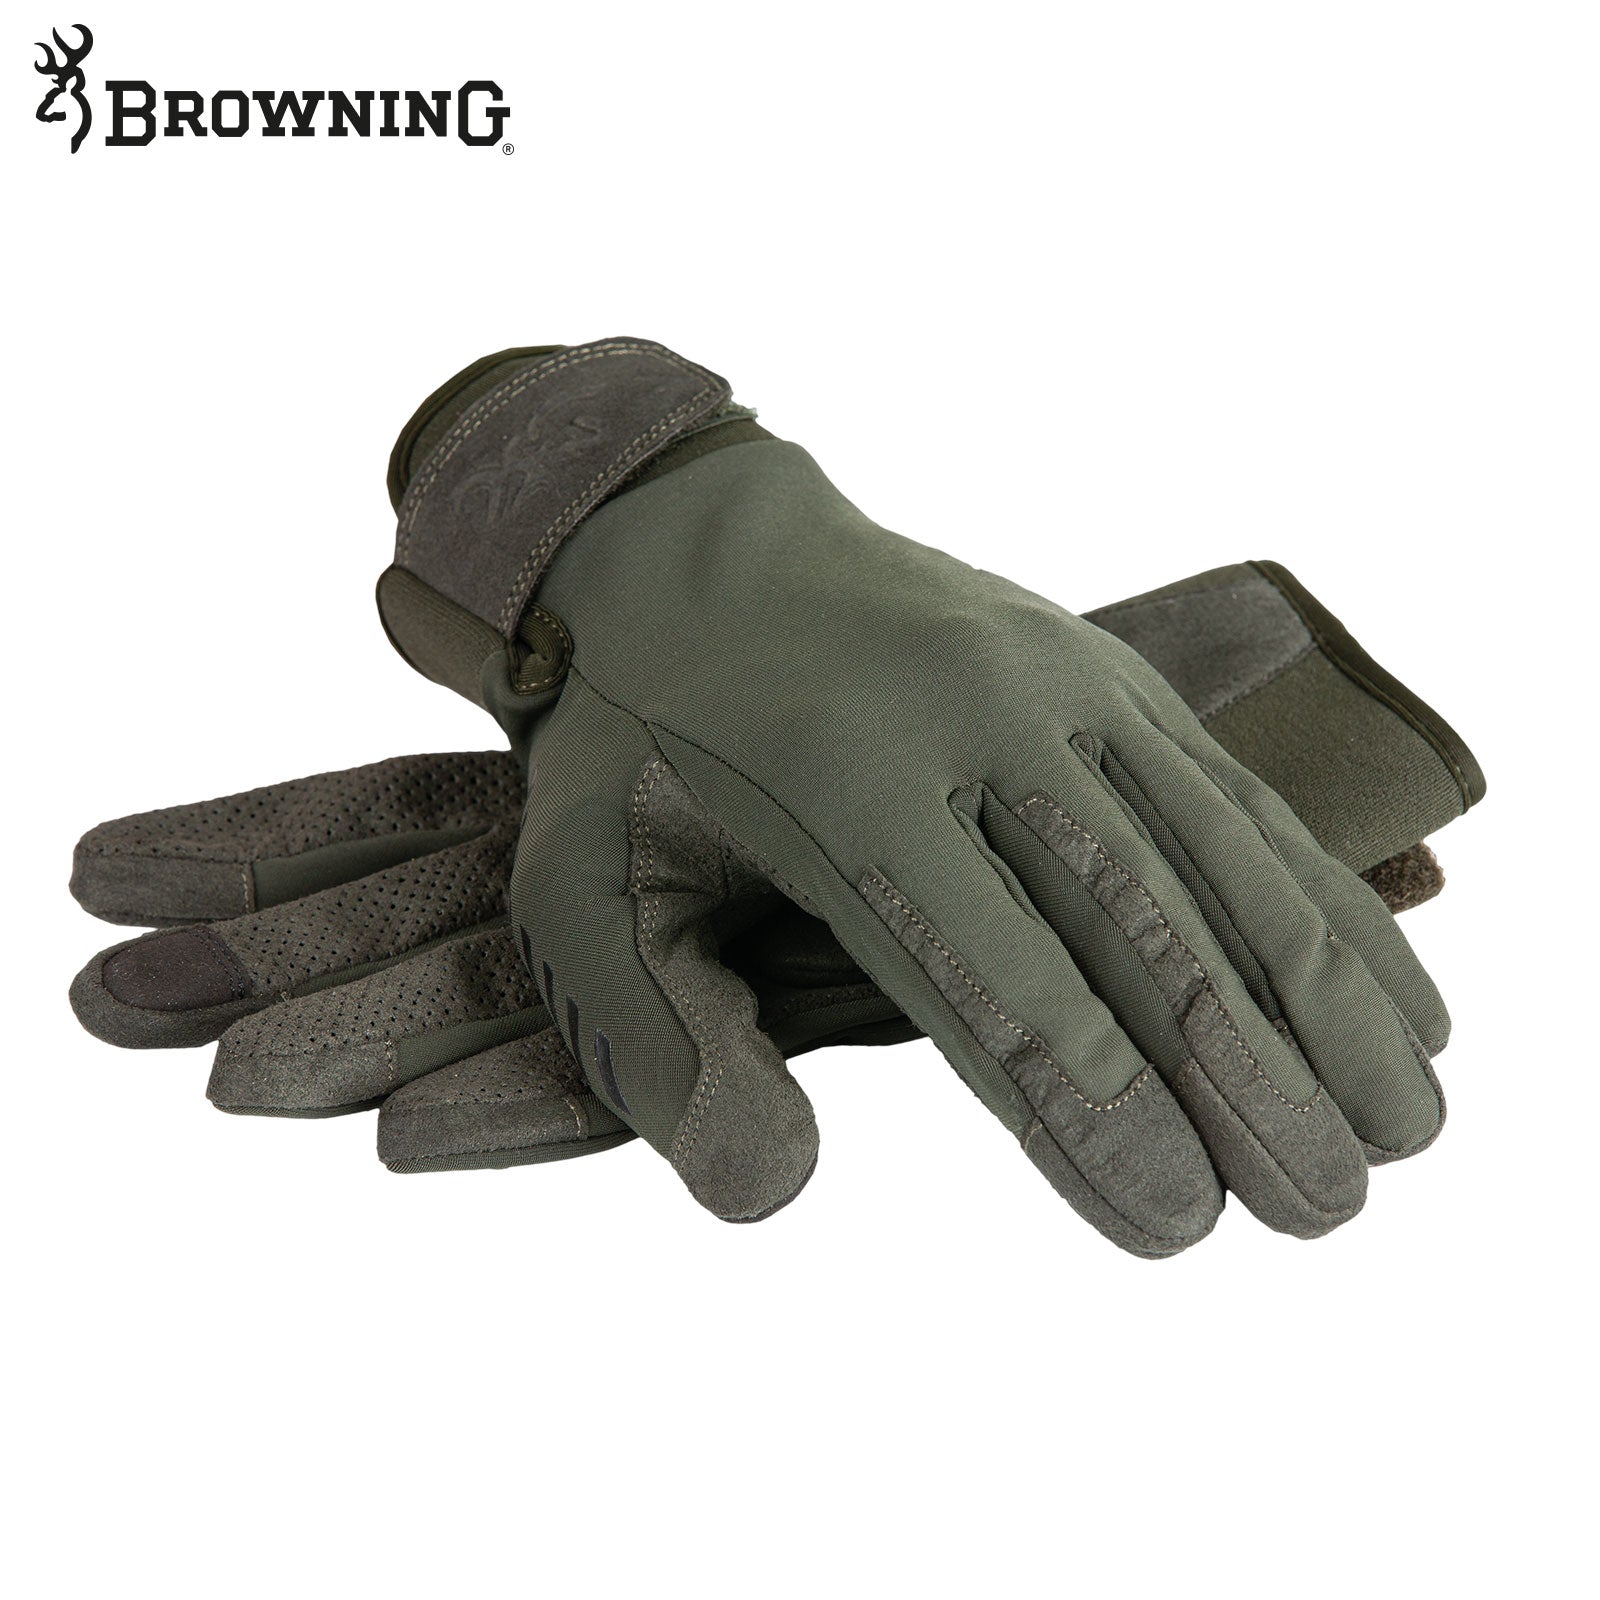 Es handelt sich hier um BROWNING Handschuh Pro Hunter für die Jagd.